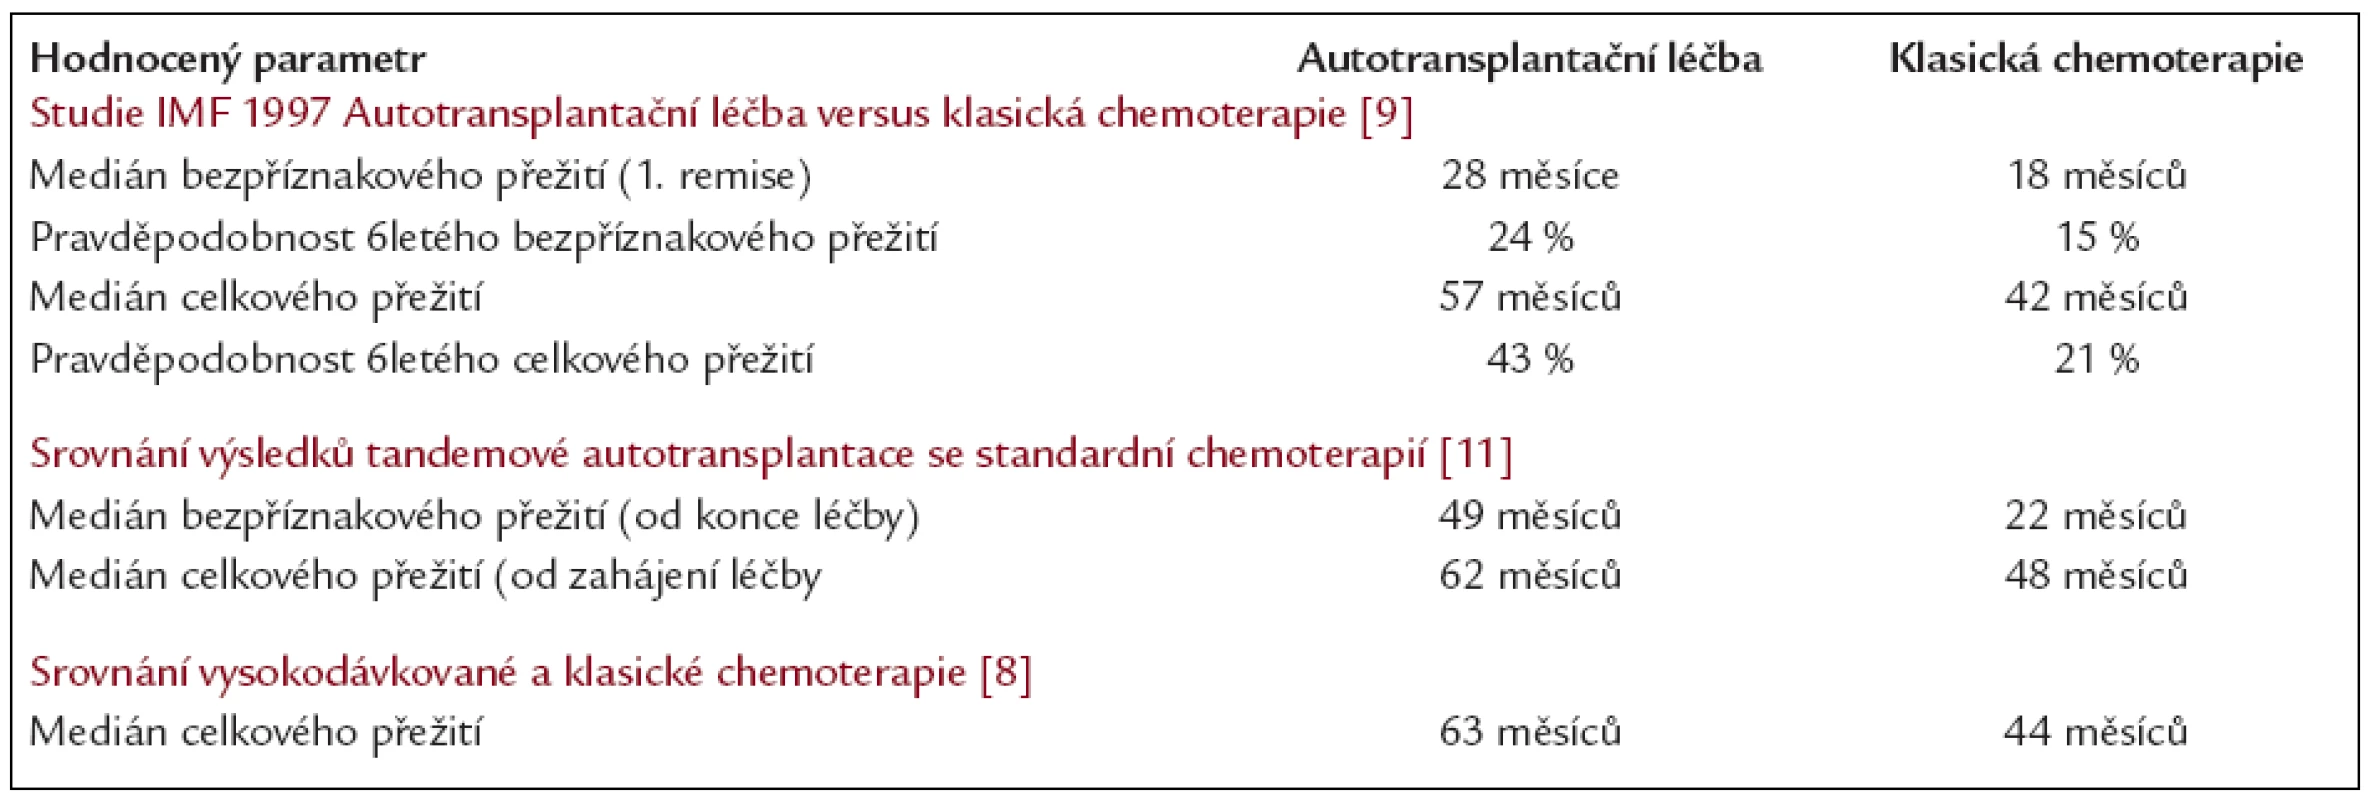 Srovnání léčebných výsledků vysokodávkované chemoterapie s autologní transplantací s léčebnými výsledky klasické chemoterapie na příkladu několika velkých randomizovaných klinických studií